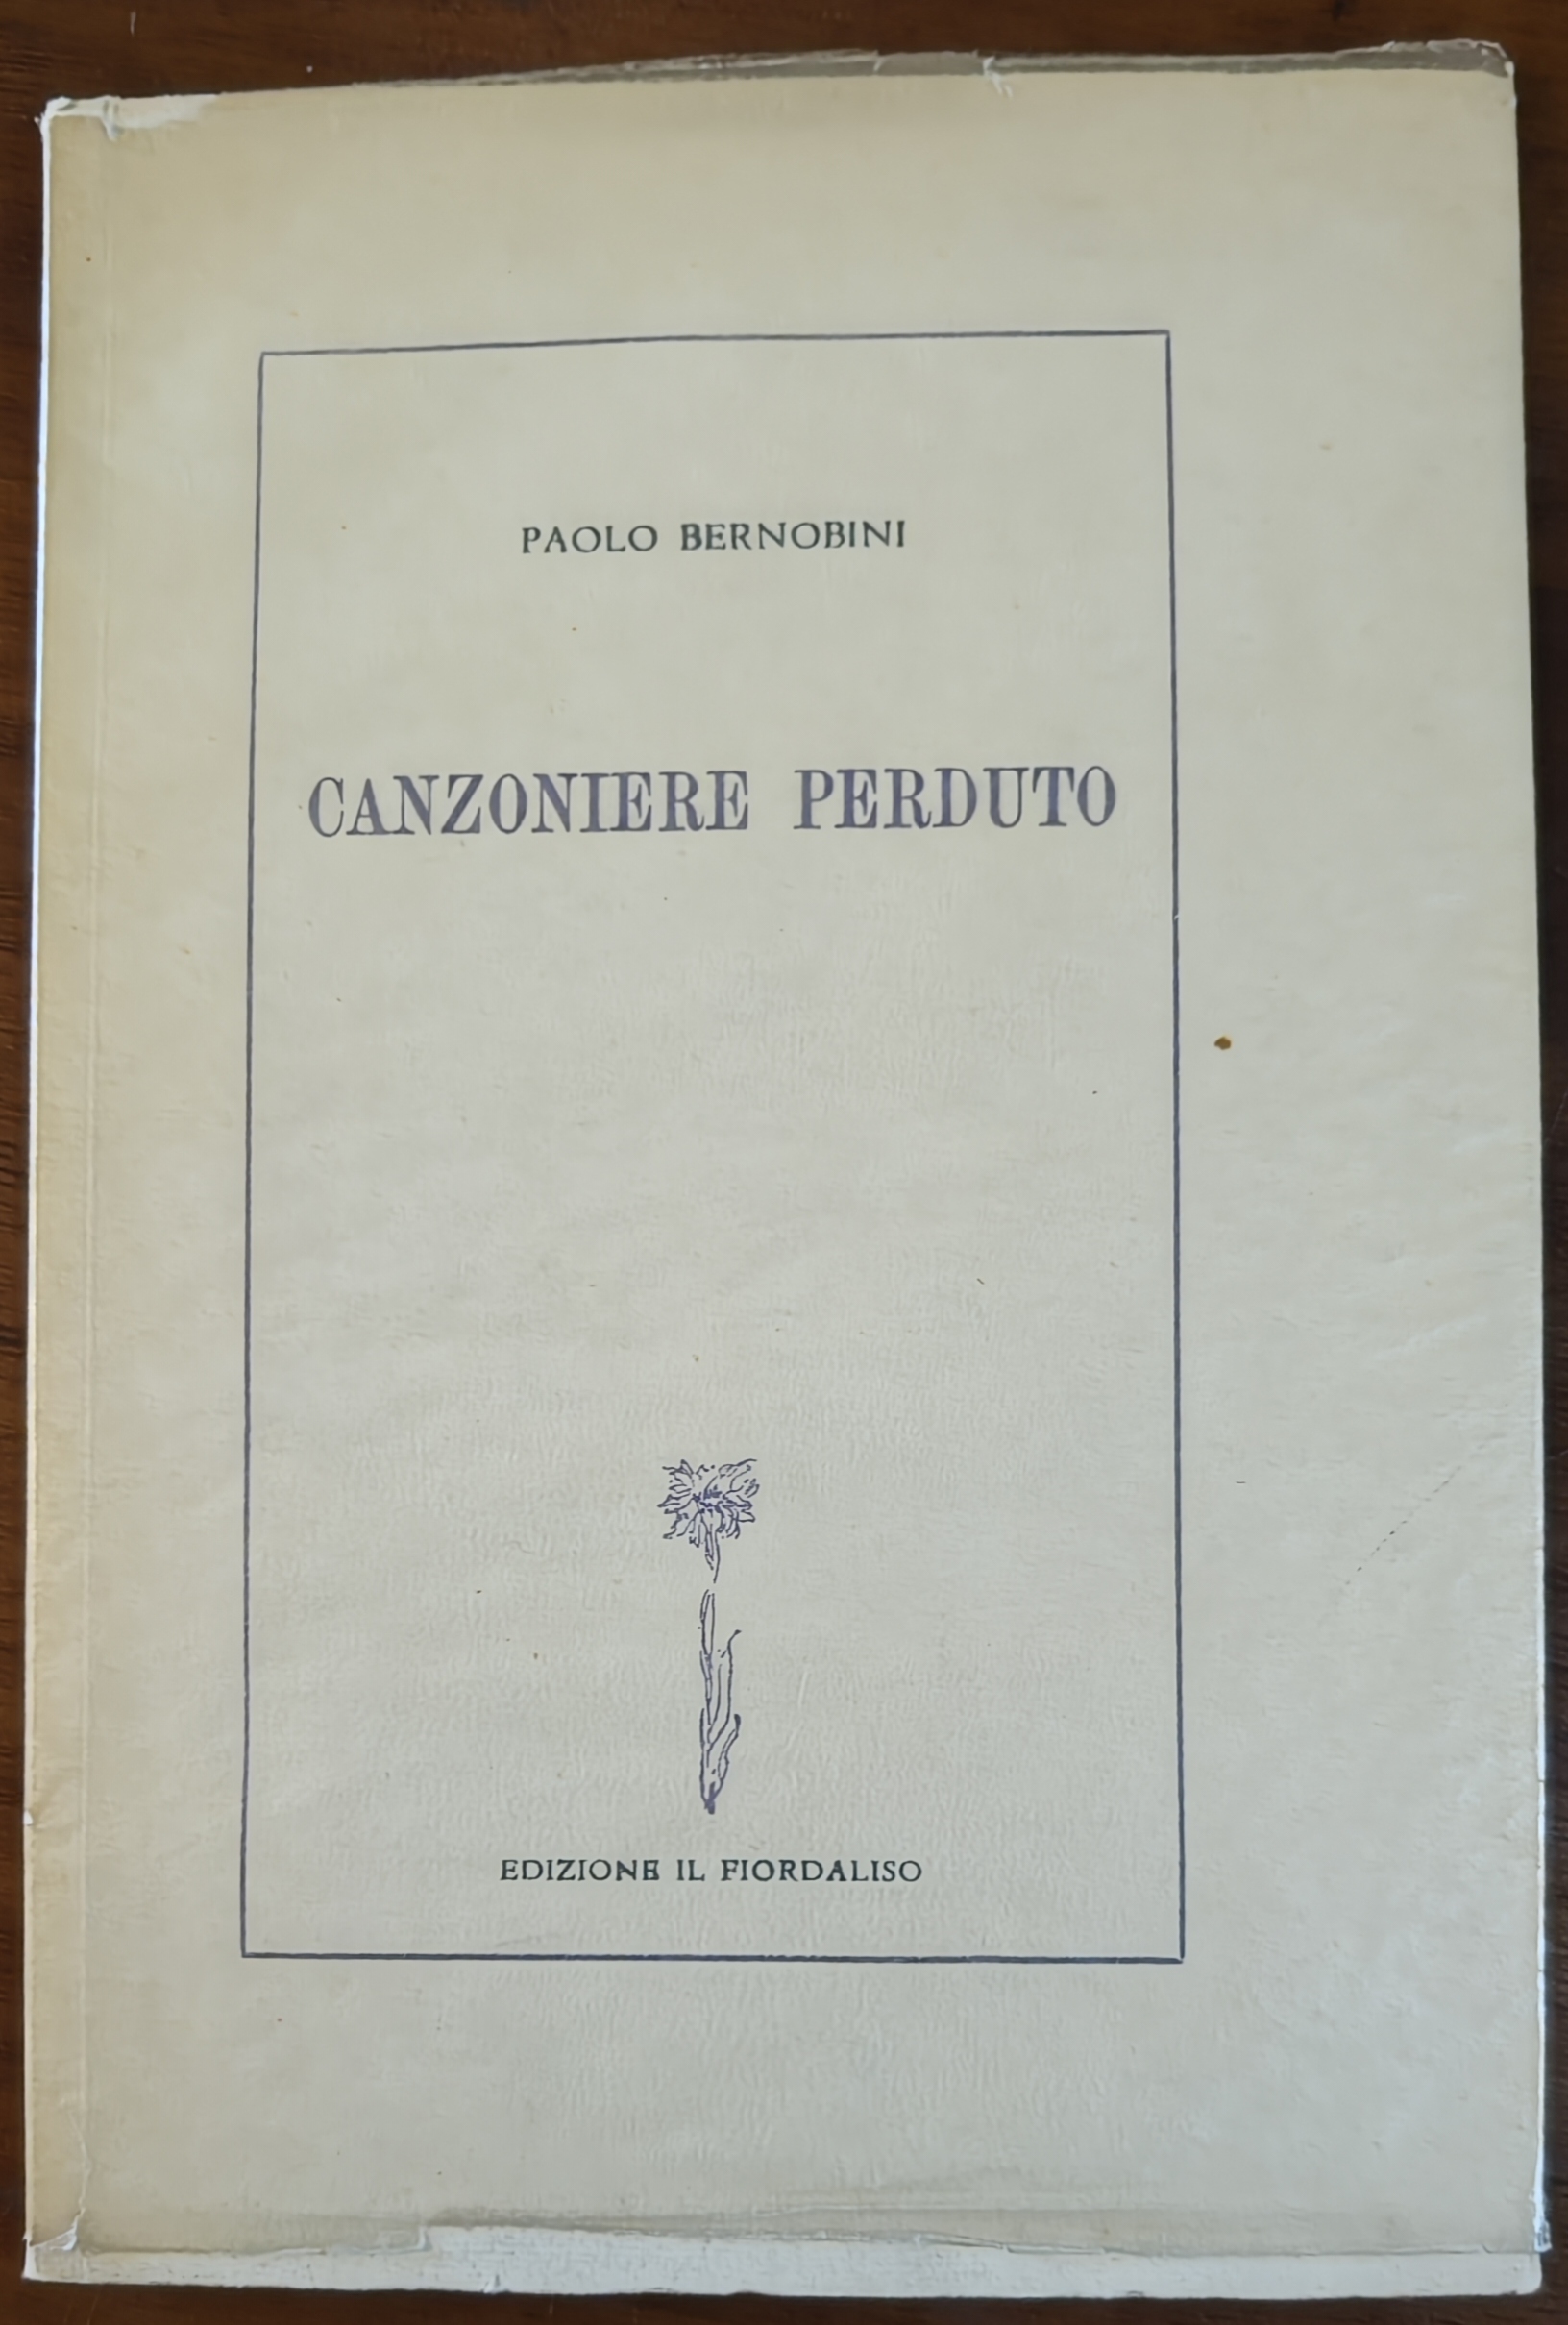 A caccia di una copia di “Canzoniere perduto” (1952) del grande poeta e intellettuale Paolo Bernobini